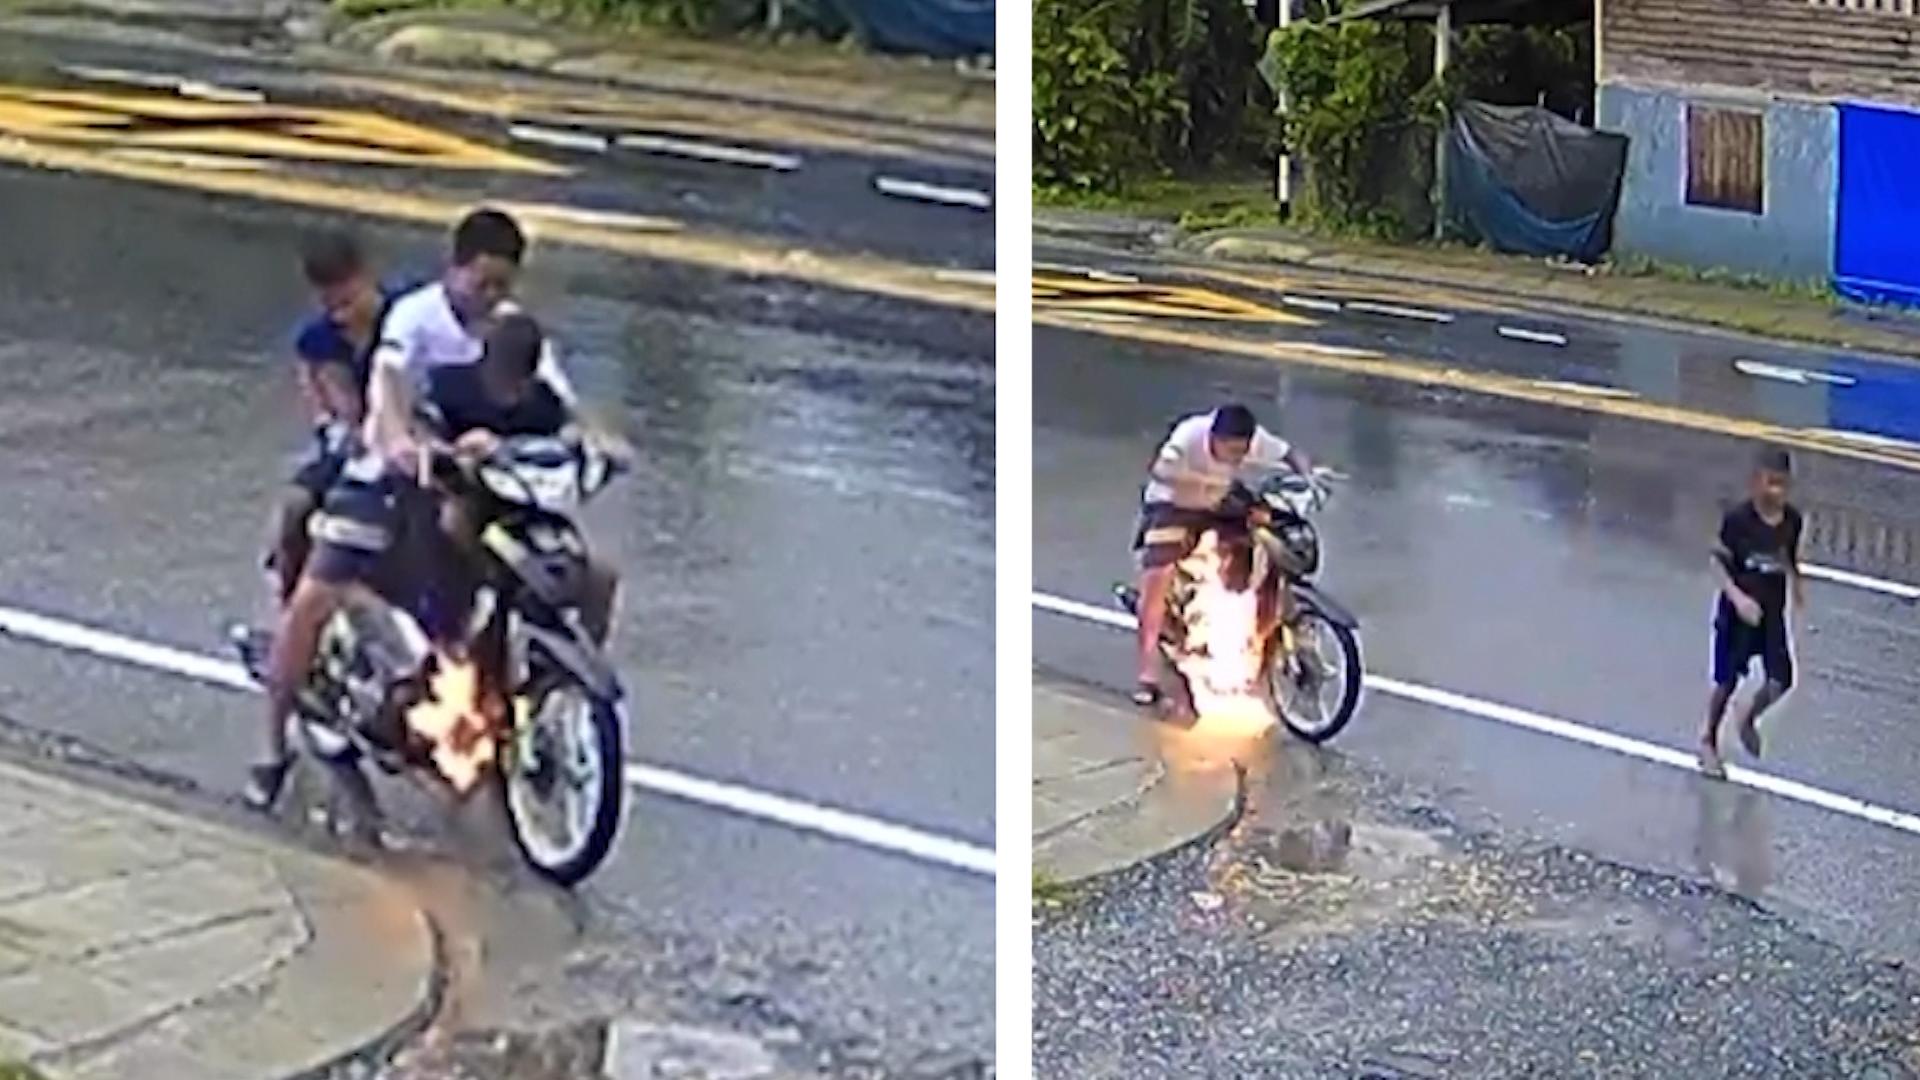 All'improvviso i giovani si trovano in pericolo di vita e lo scooter prende fuoco